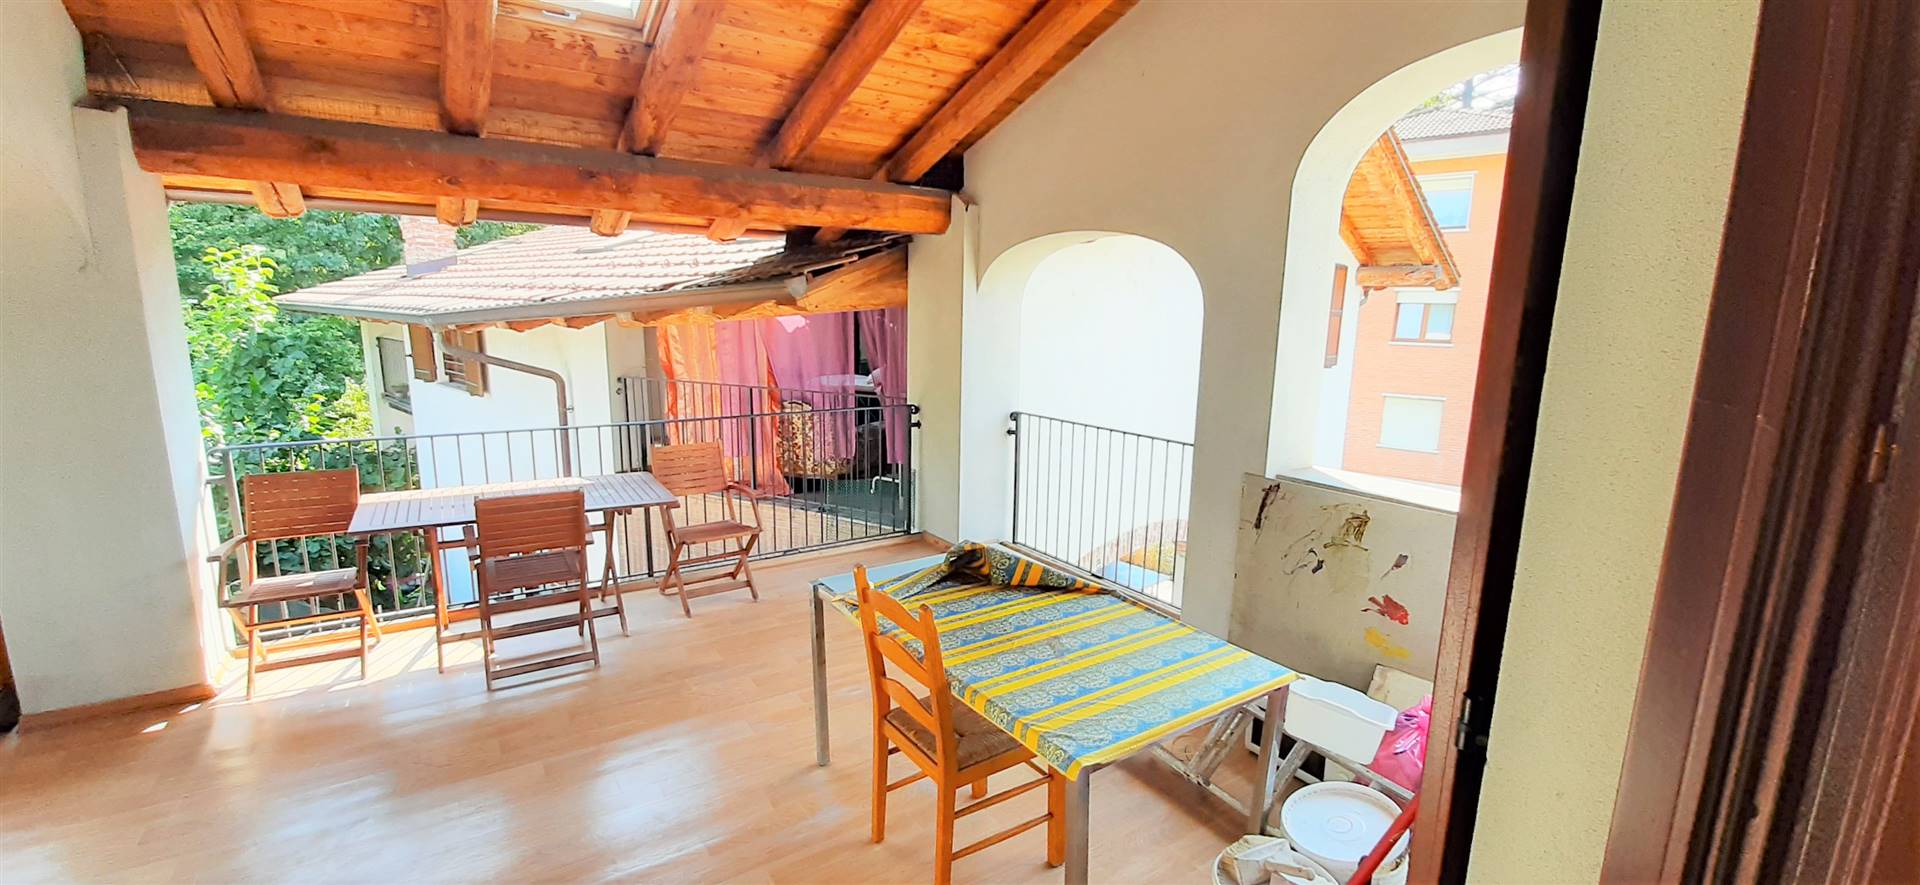 Appartamento in affitto a Boves, 4 locali, prezzo € 450 | CambioCasa.it